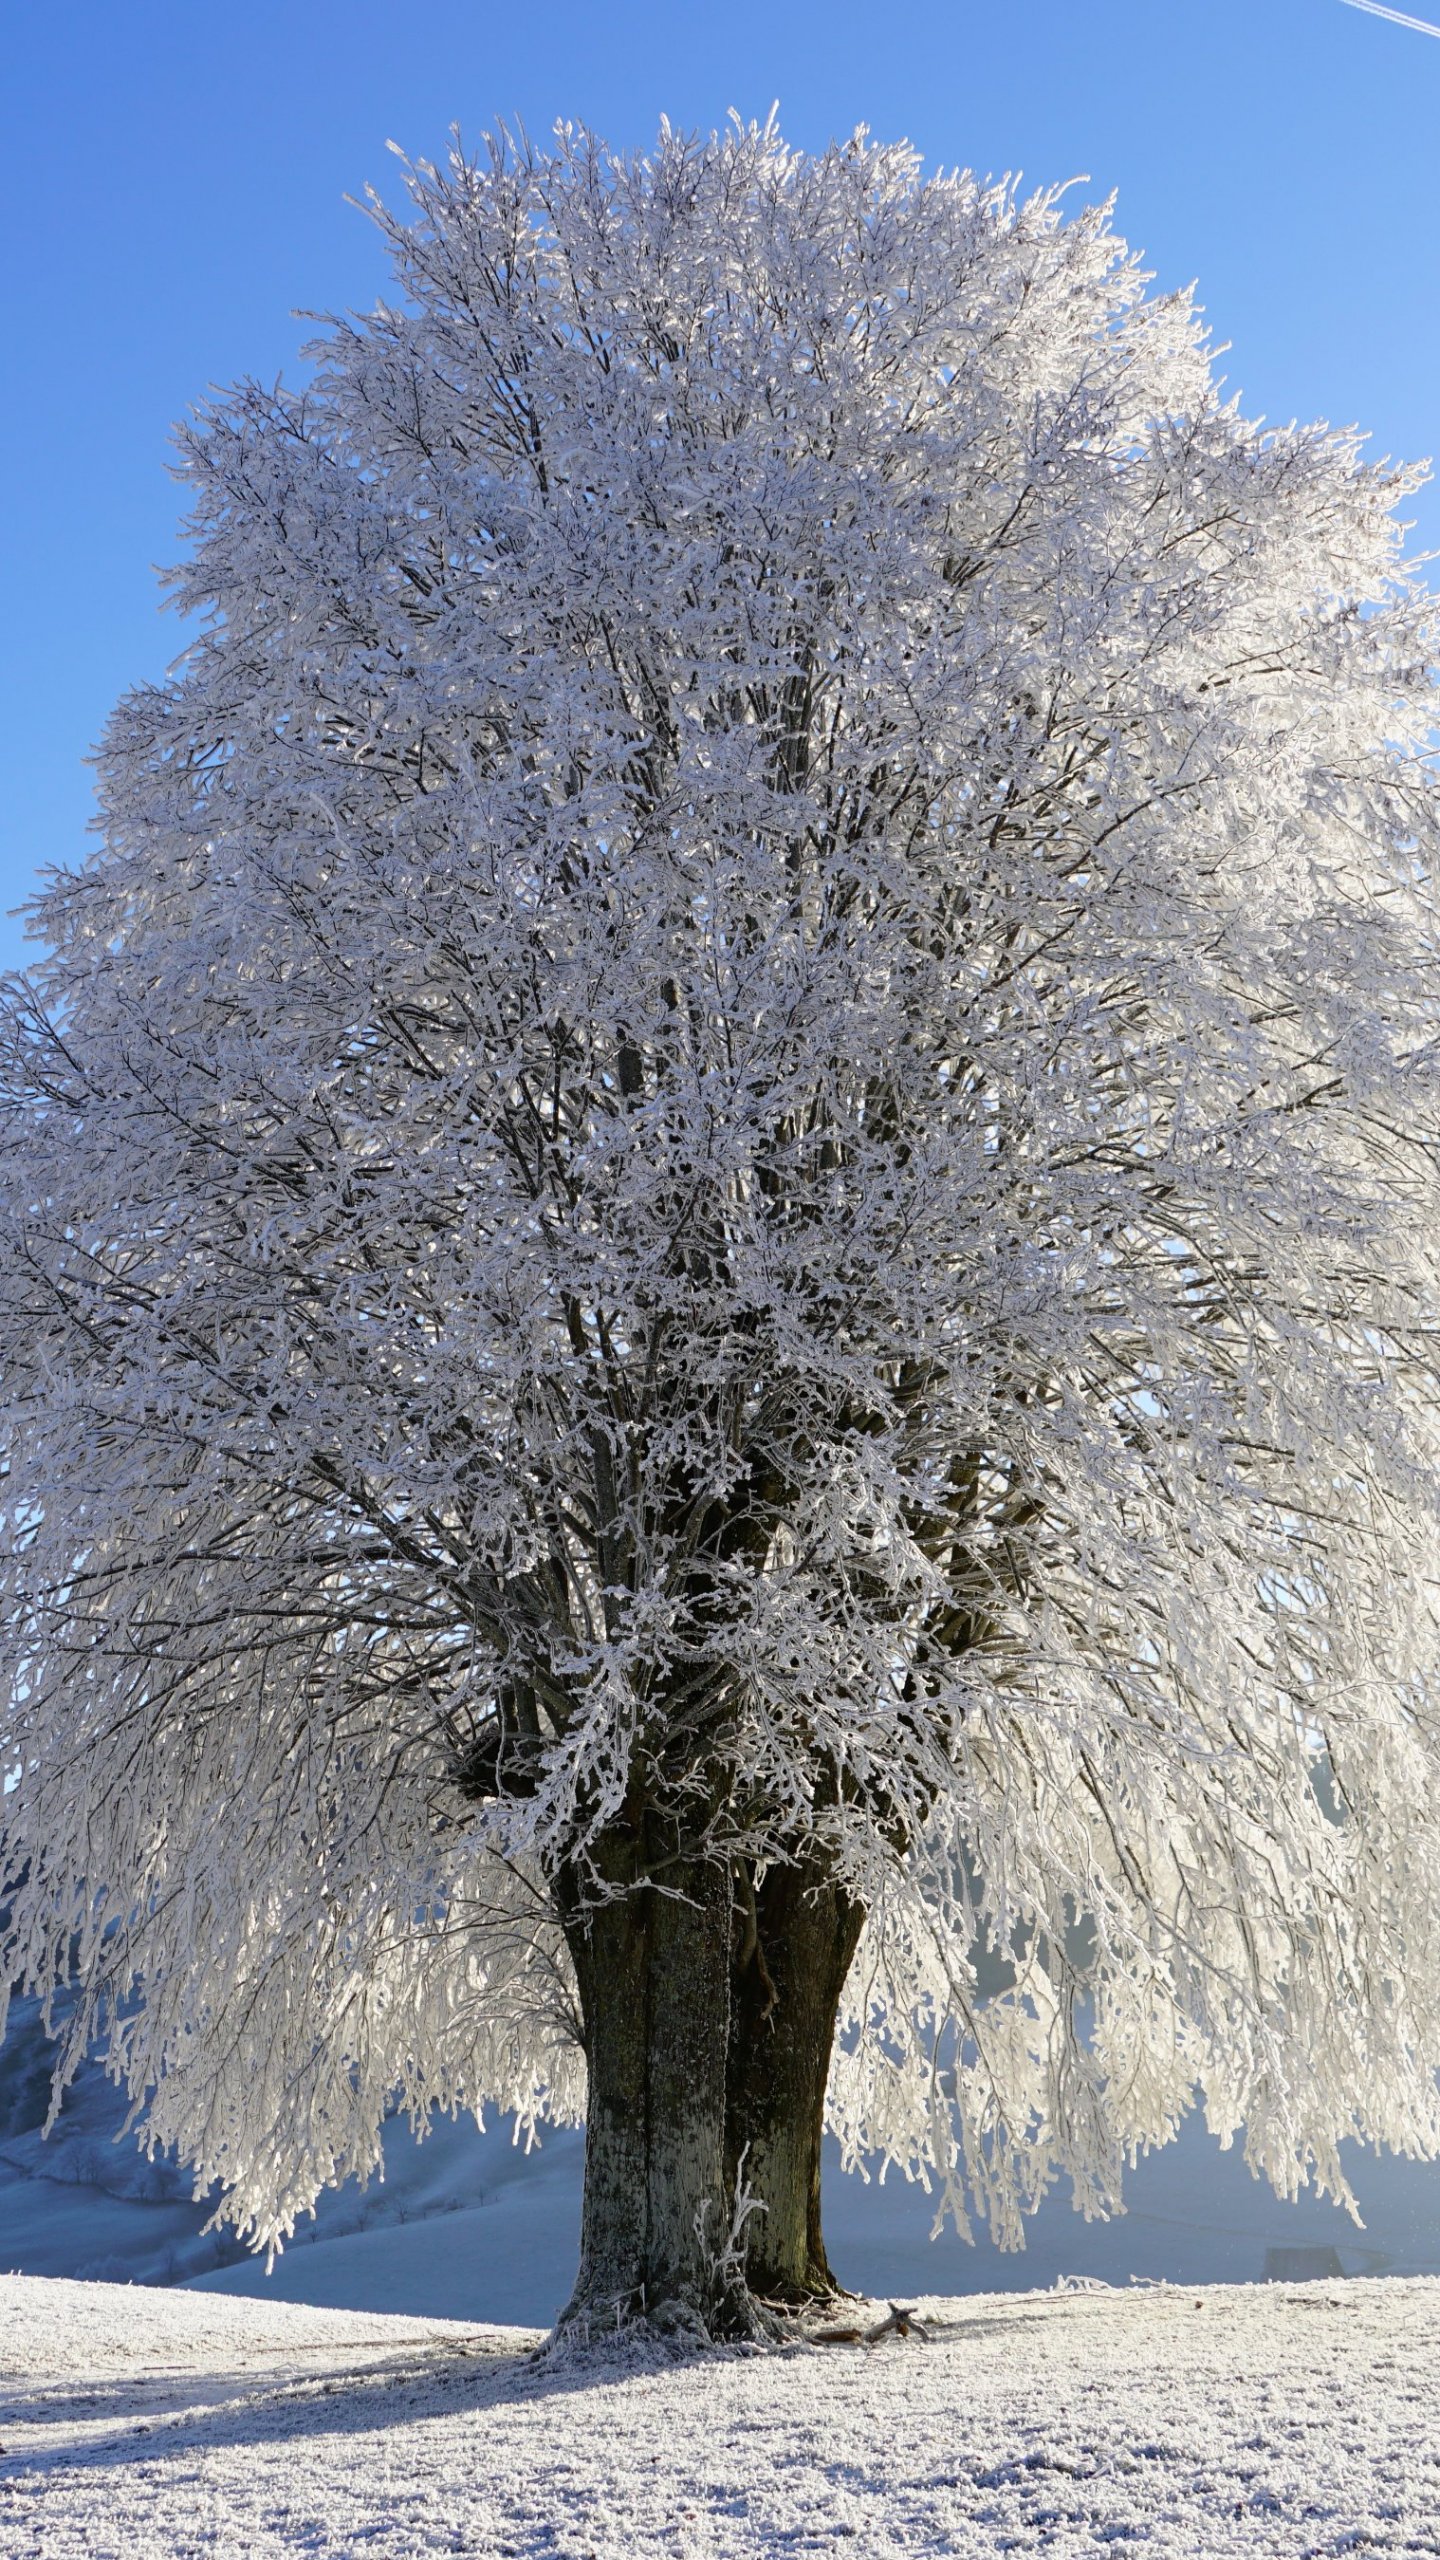 Cây trong tuyết - Thưởng thức những hình ảnh tuyết phủ trắng xóa mà cây cối vẫn sinh sôi trong những ngày đông se lạnh. Một cảnh tượng đẹp như tranh vẽ, đưa bạn vào không gian thực sự tuyệt vời.